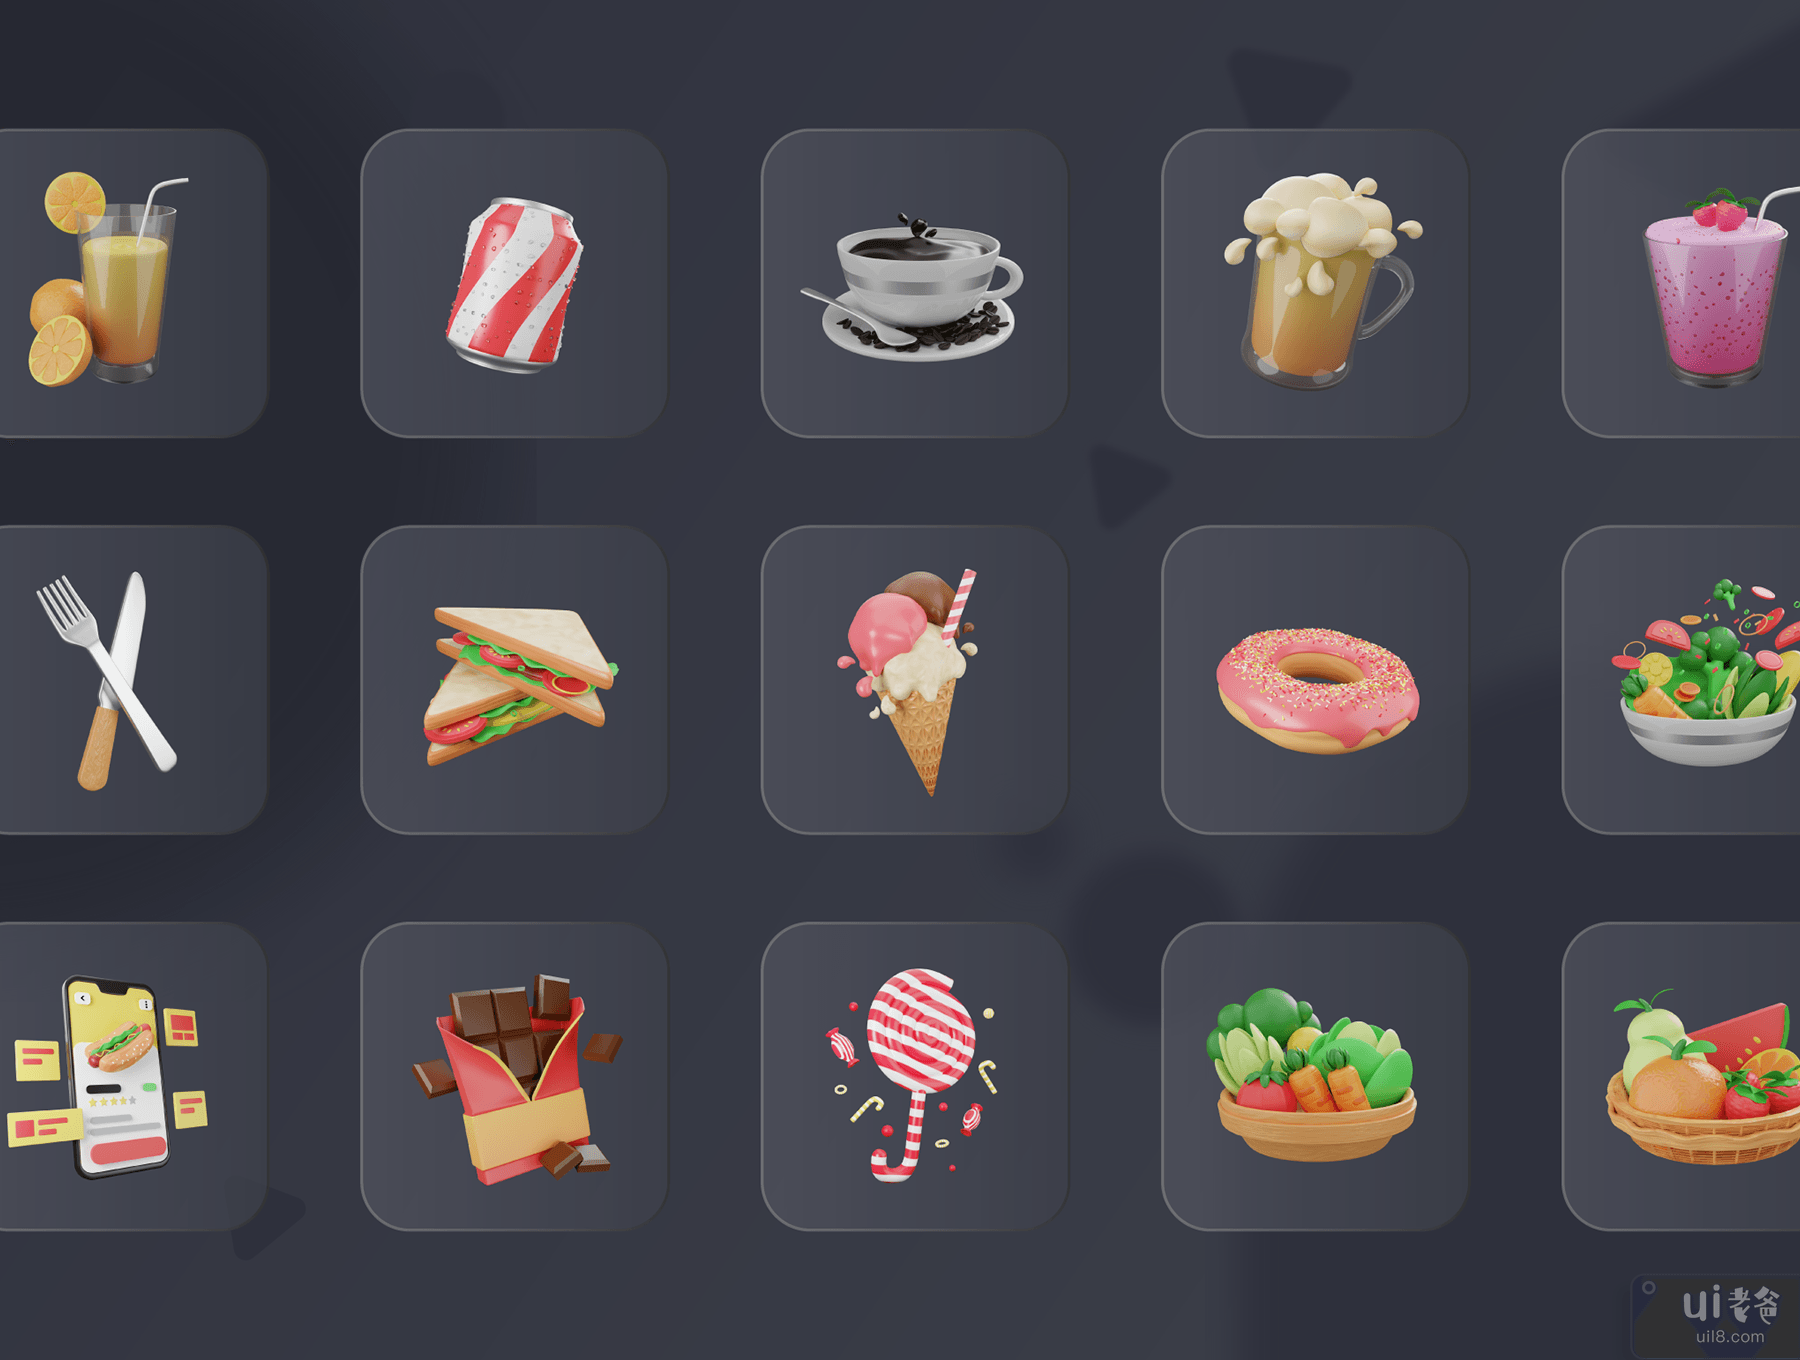 30 个 3D 食品和餐饮图标插图 (30 3D Food & Meals Icons Illustration)插图